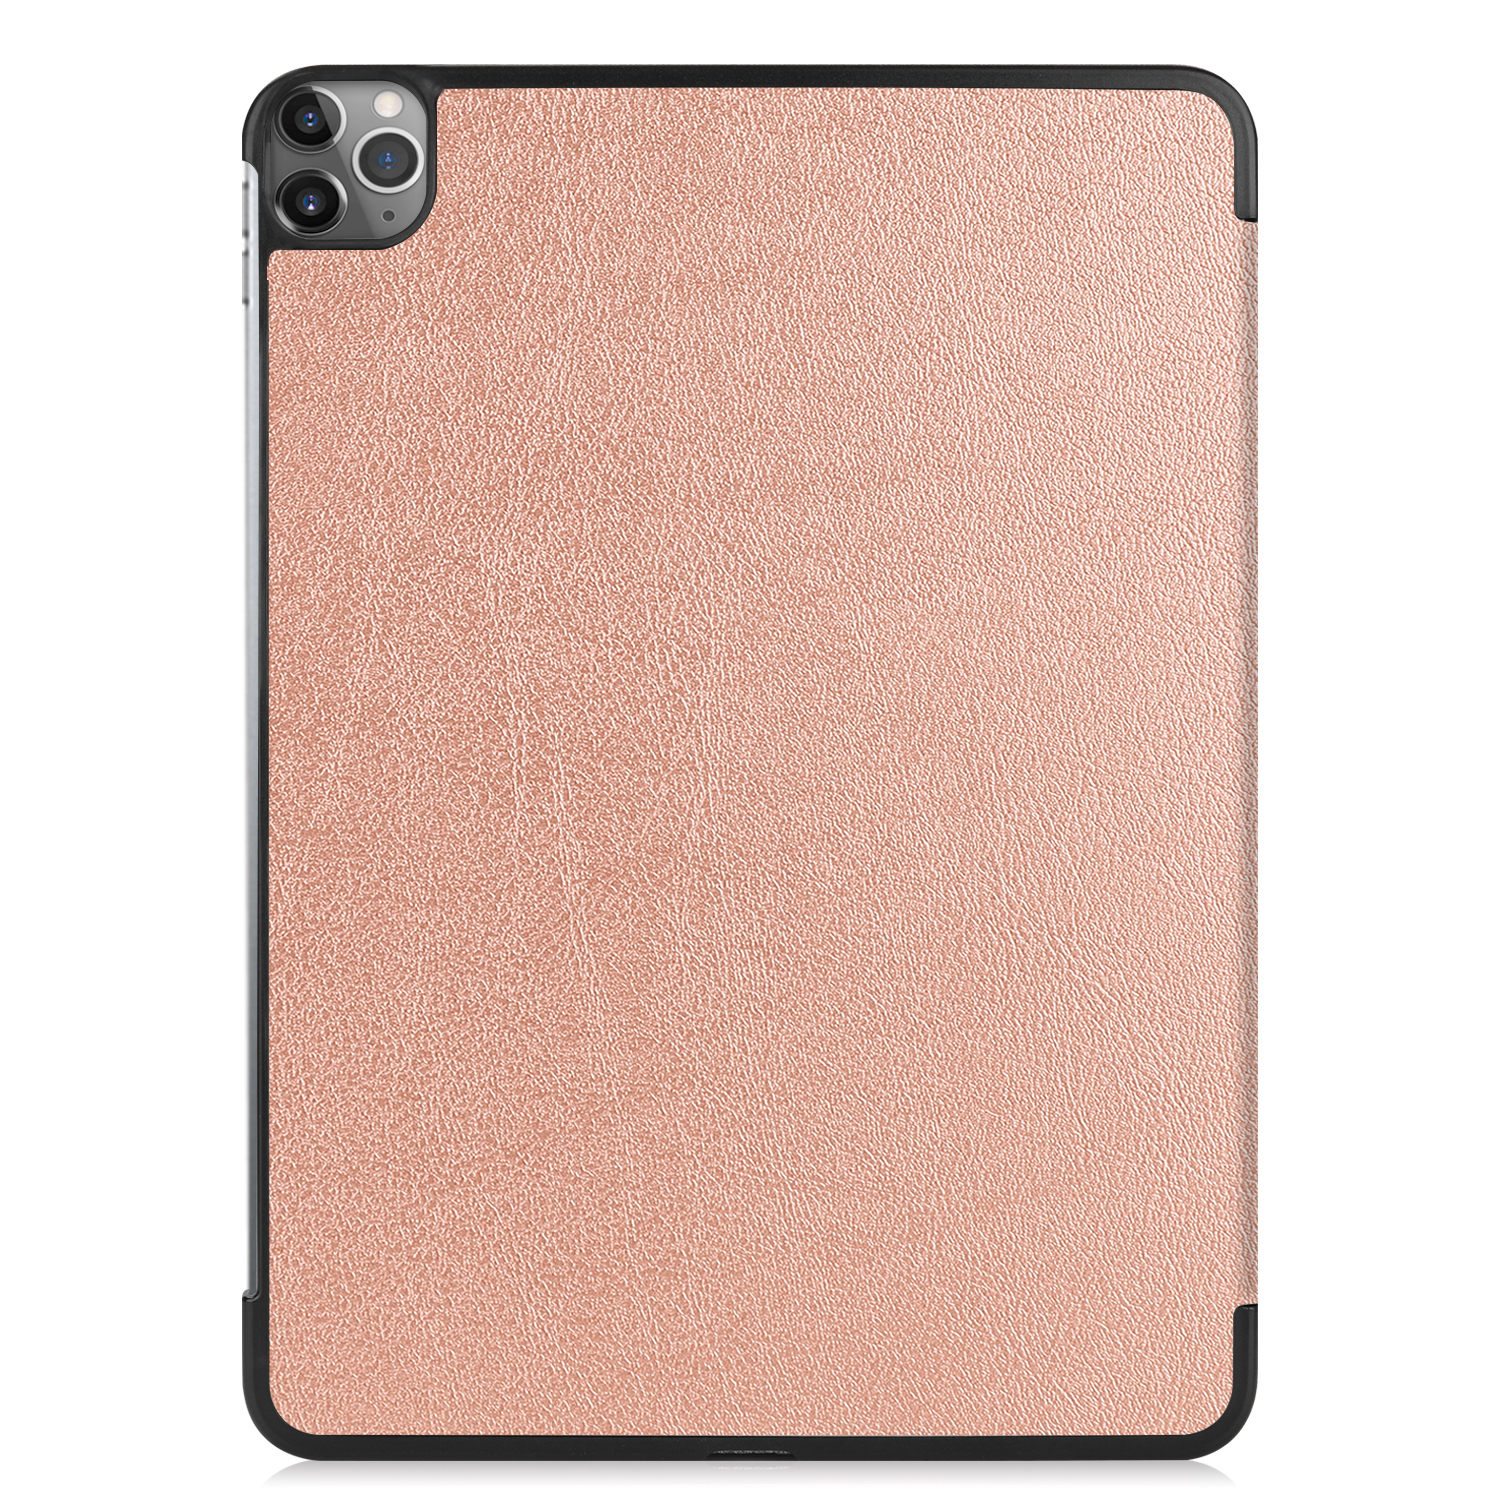 11 Kunstleder, Apple Bookcover iPad bronze 2020 Pro /2021/2022 LOBWERK Schutzhülle 11 Hülle für Zoll